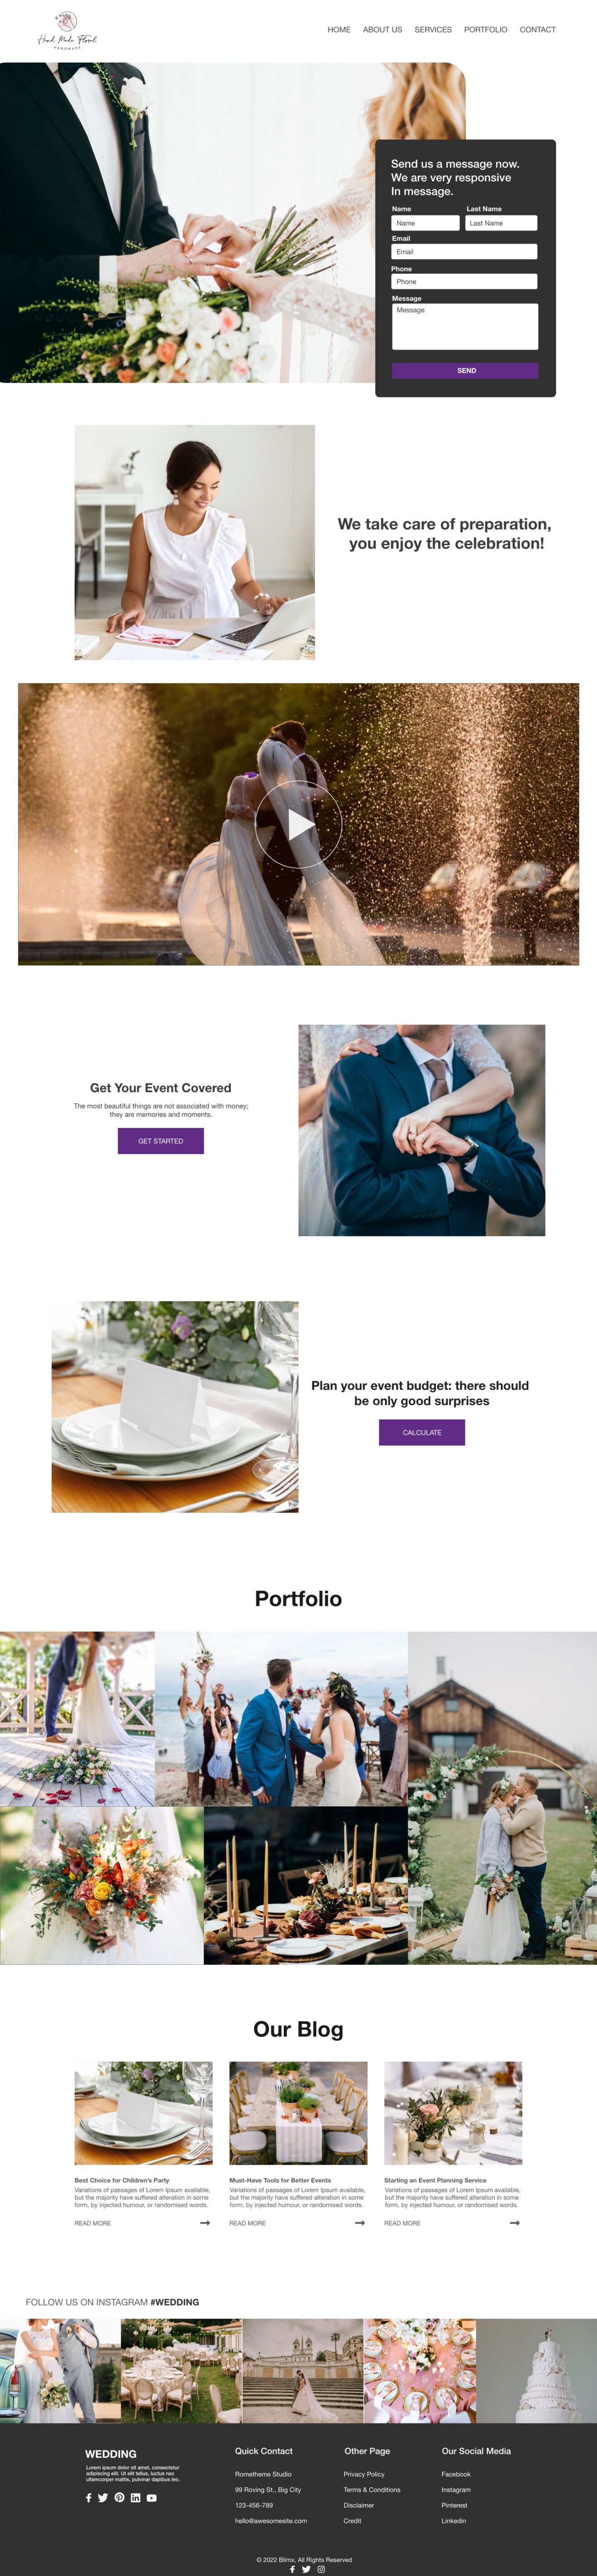 Wedding Day Website Design